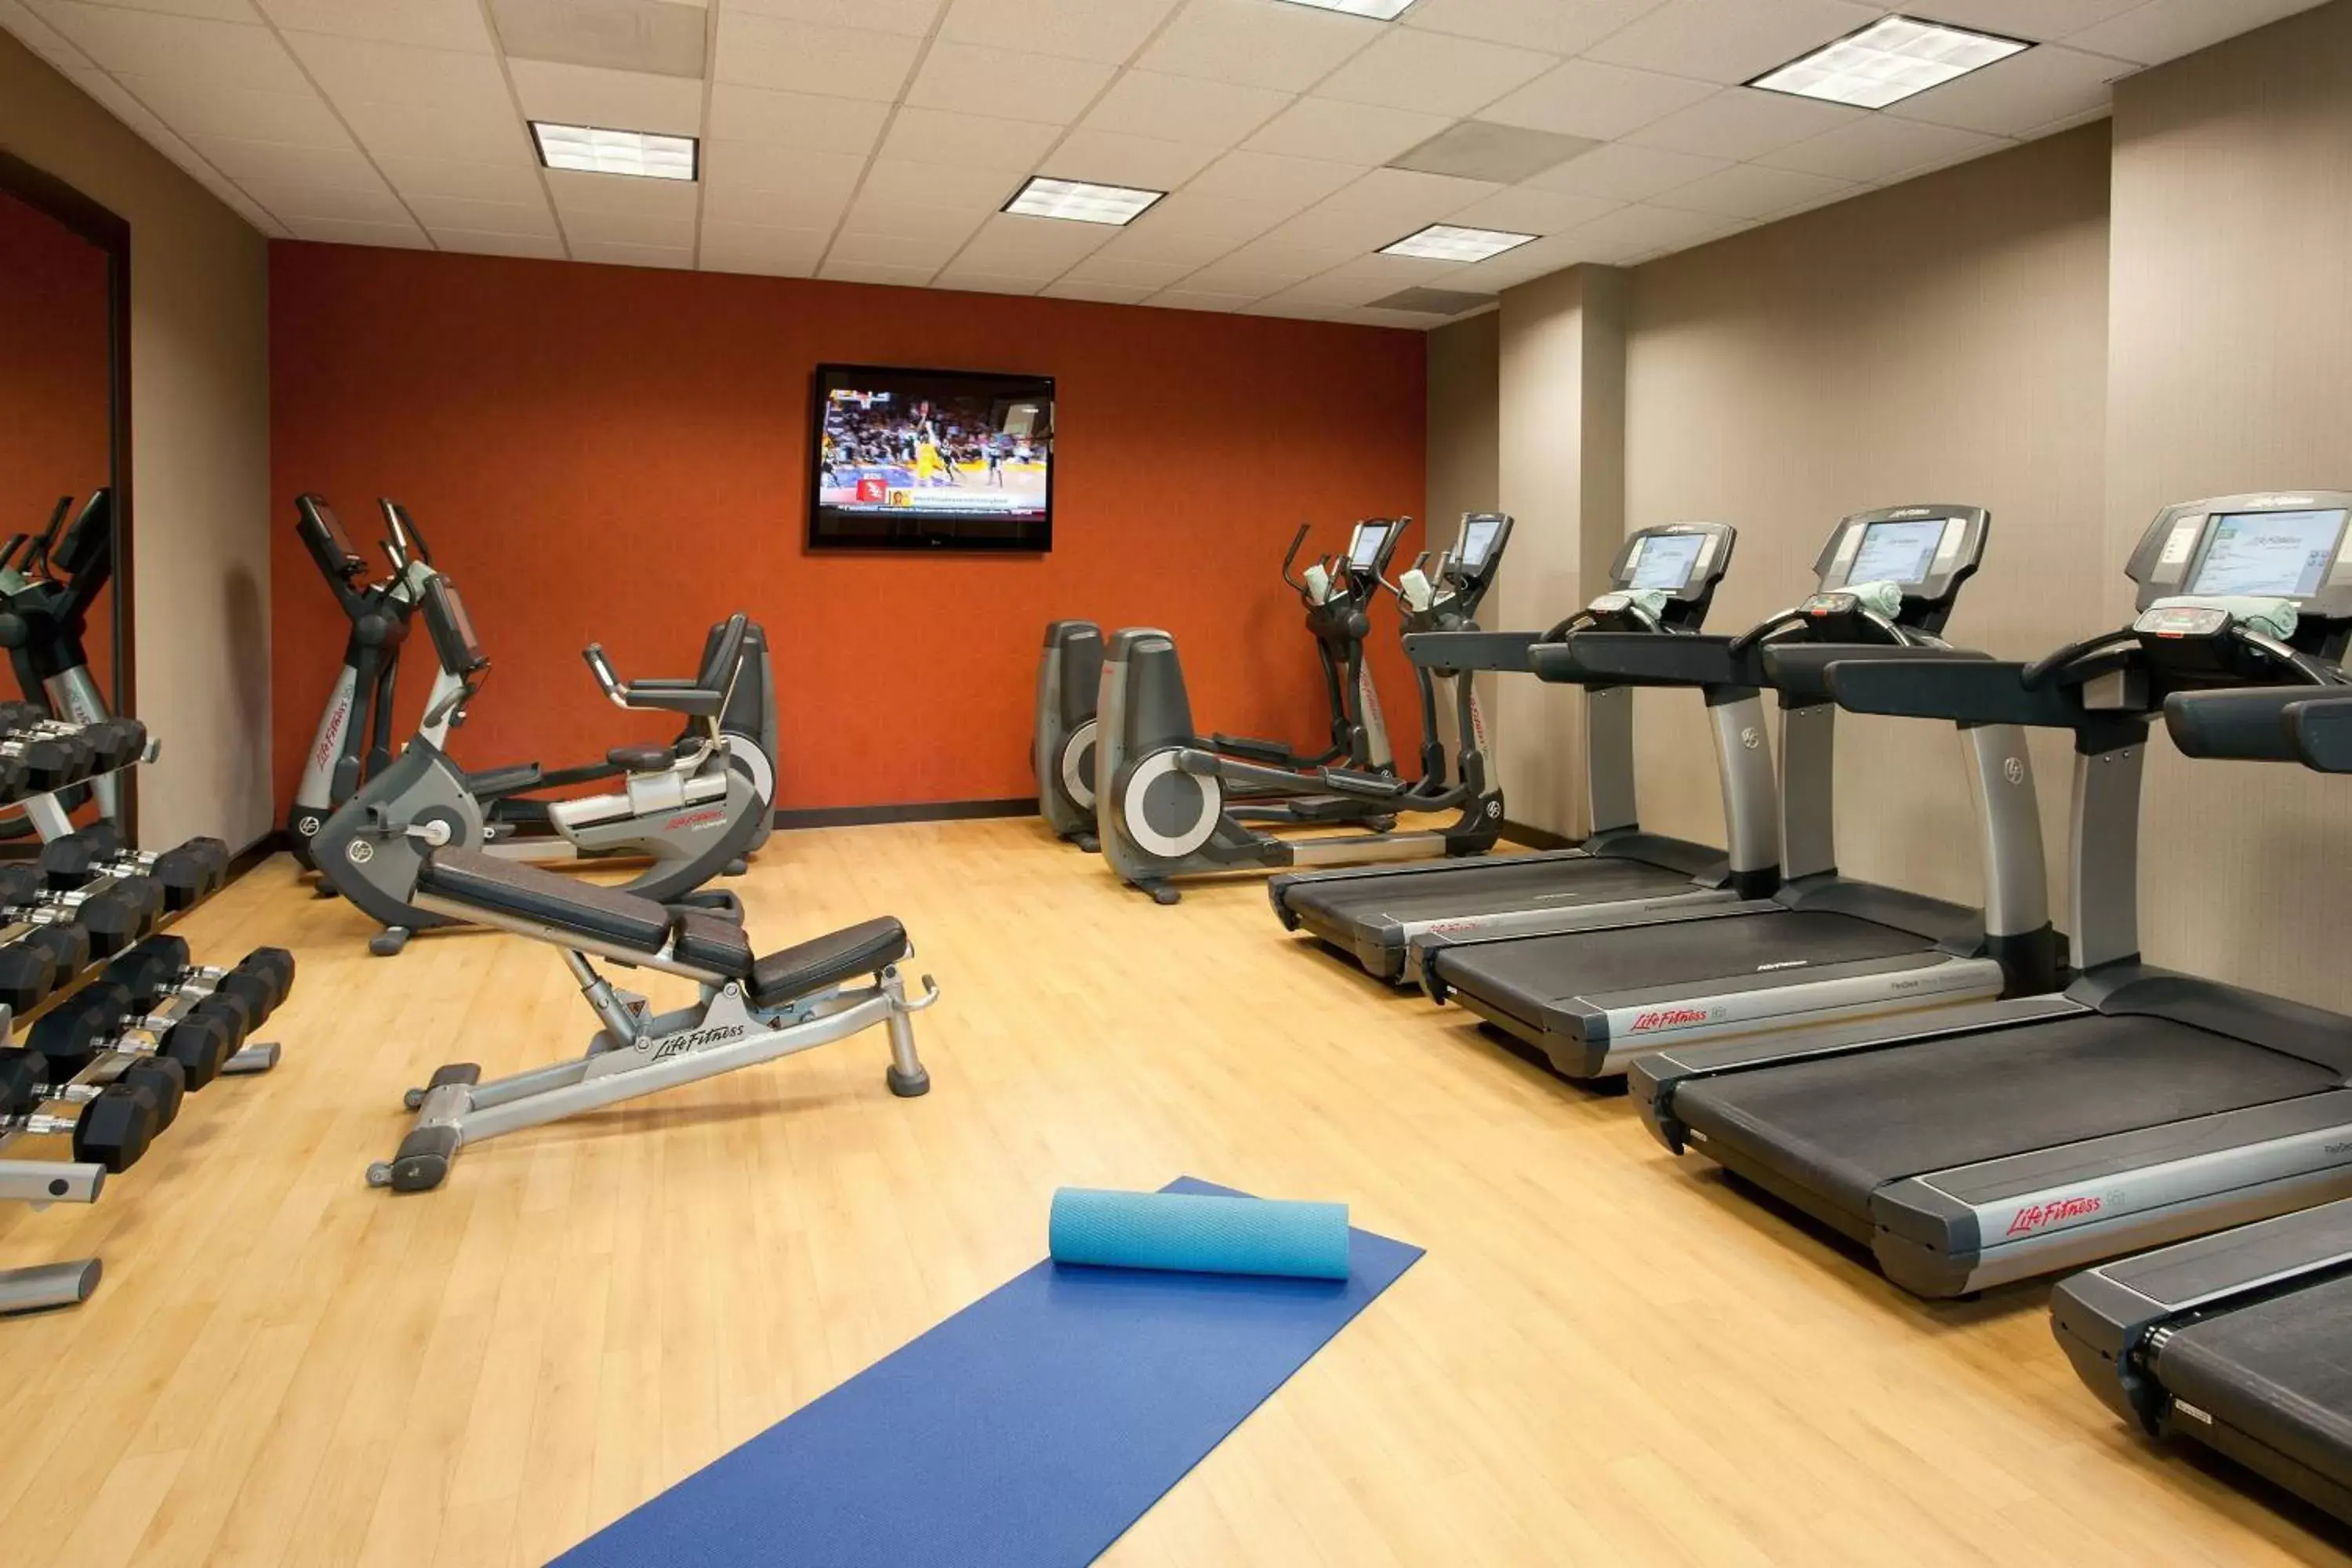 Fitness centre/facilities, Fitness Center/Facilities in Residence Inn by Marriott Las Vegas Hughes Center